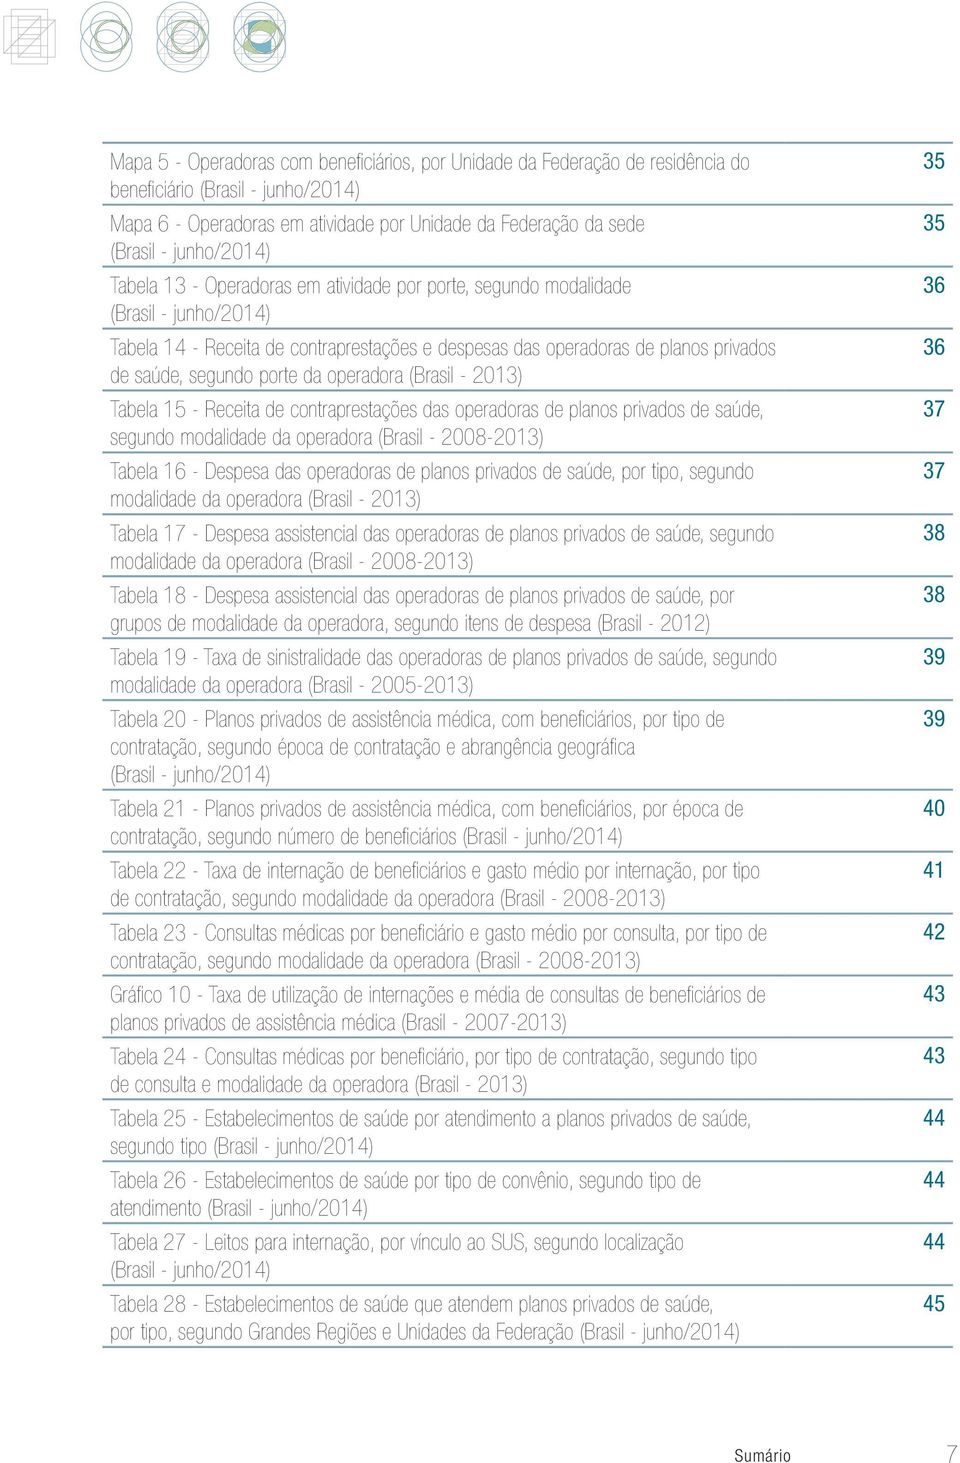 segundo porte da operadora (Brasil - 2013) Tabela 15 - Receita de contraprestações das operadoras de planos privados de saúde, segundo modalidade da operadora (Brasil - 2008-2013) Tabela 16 - Despesa